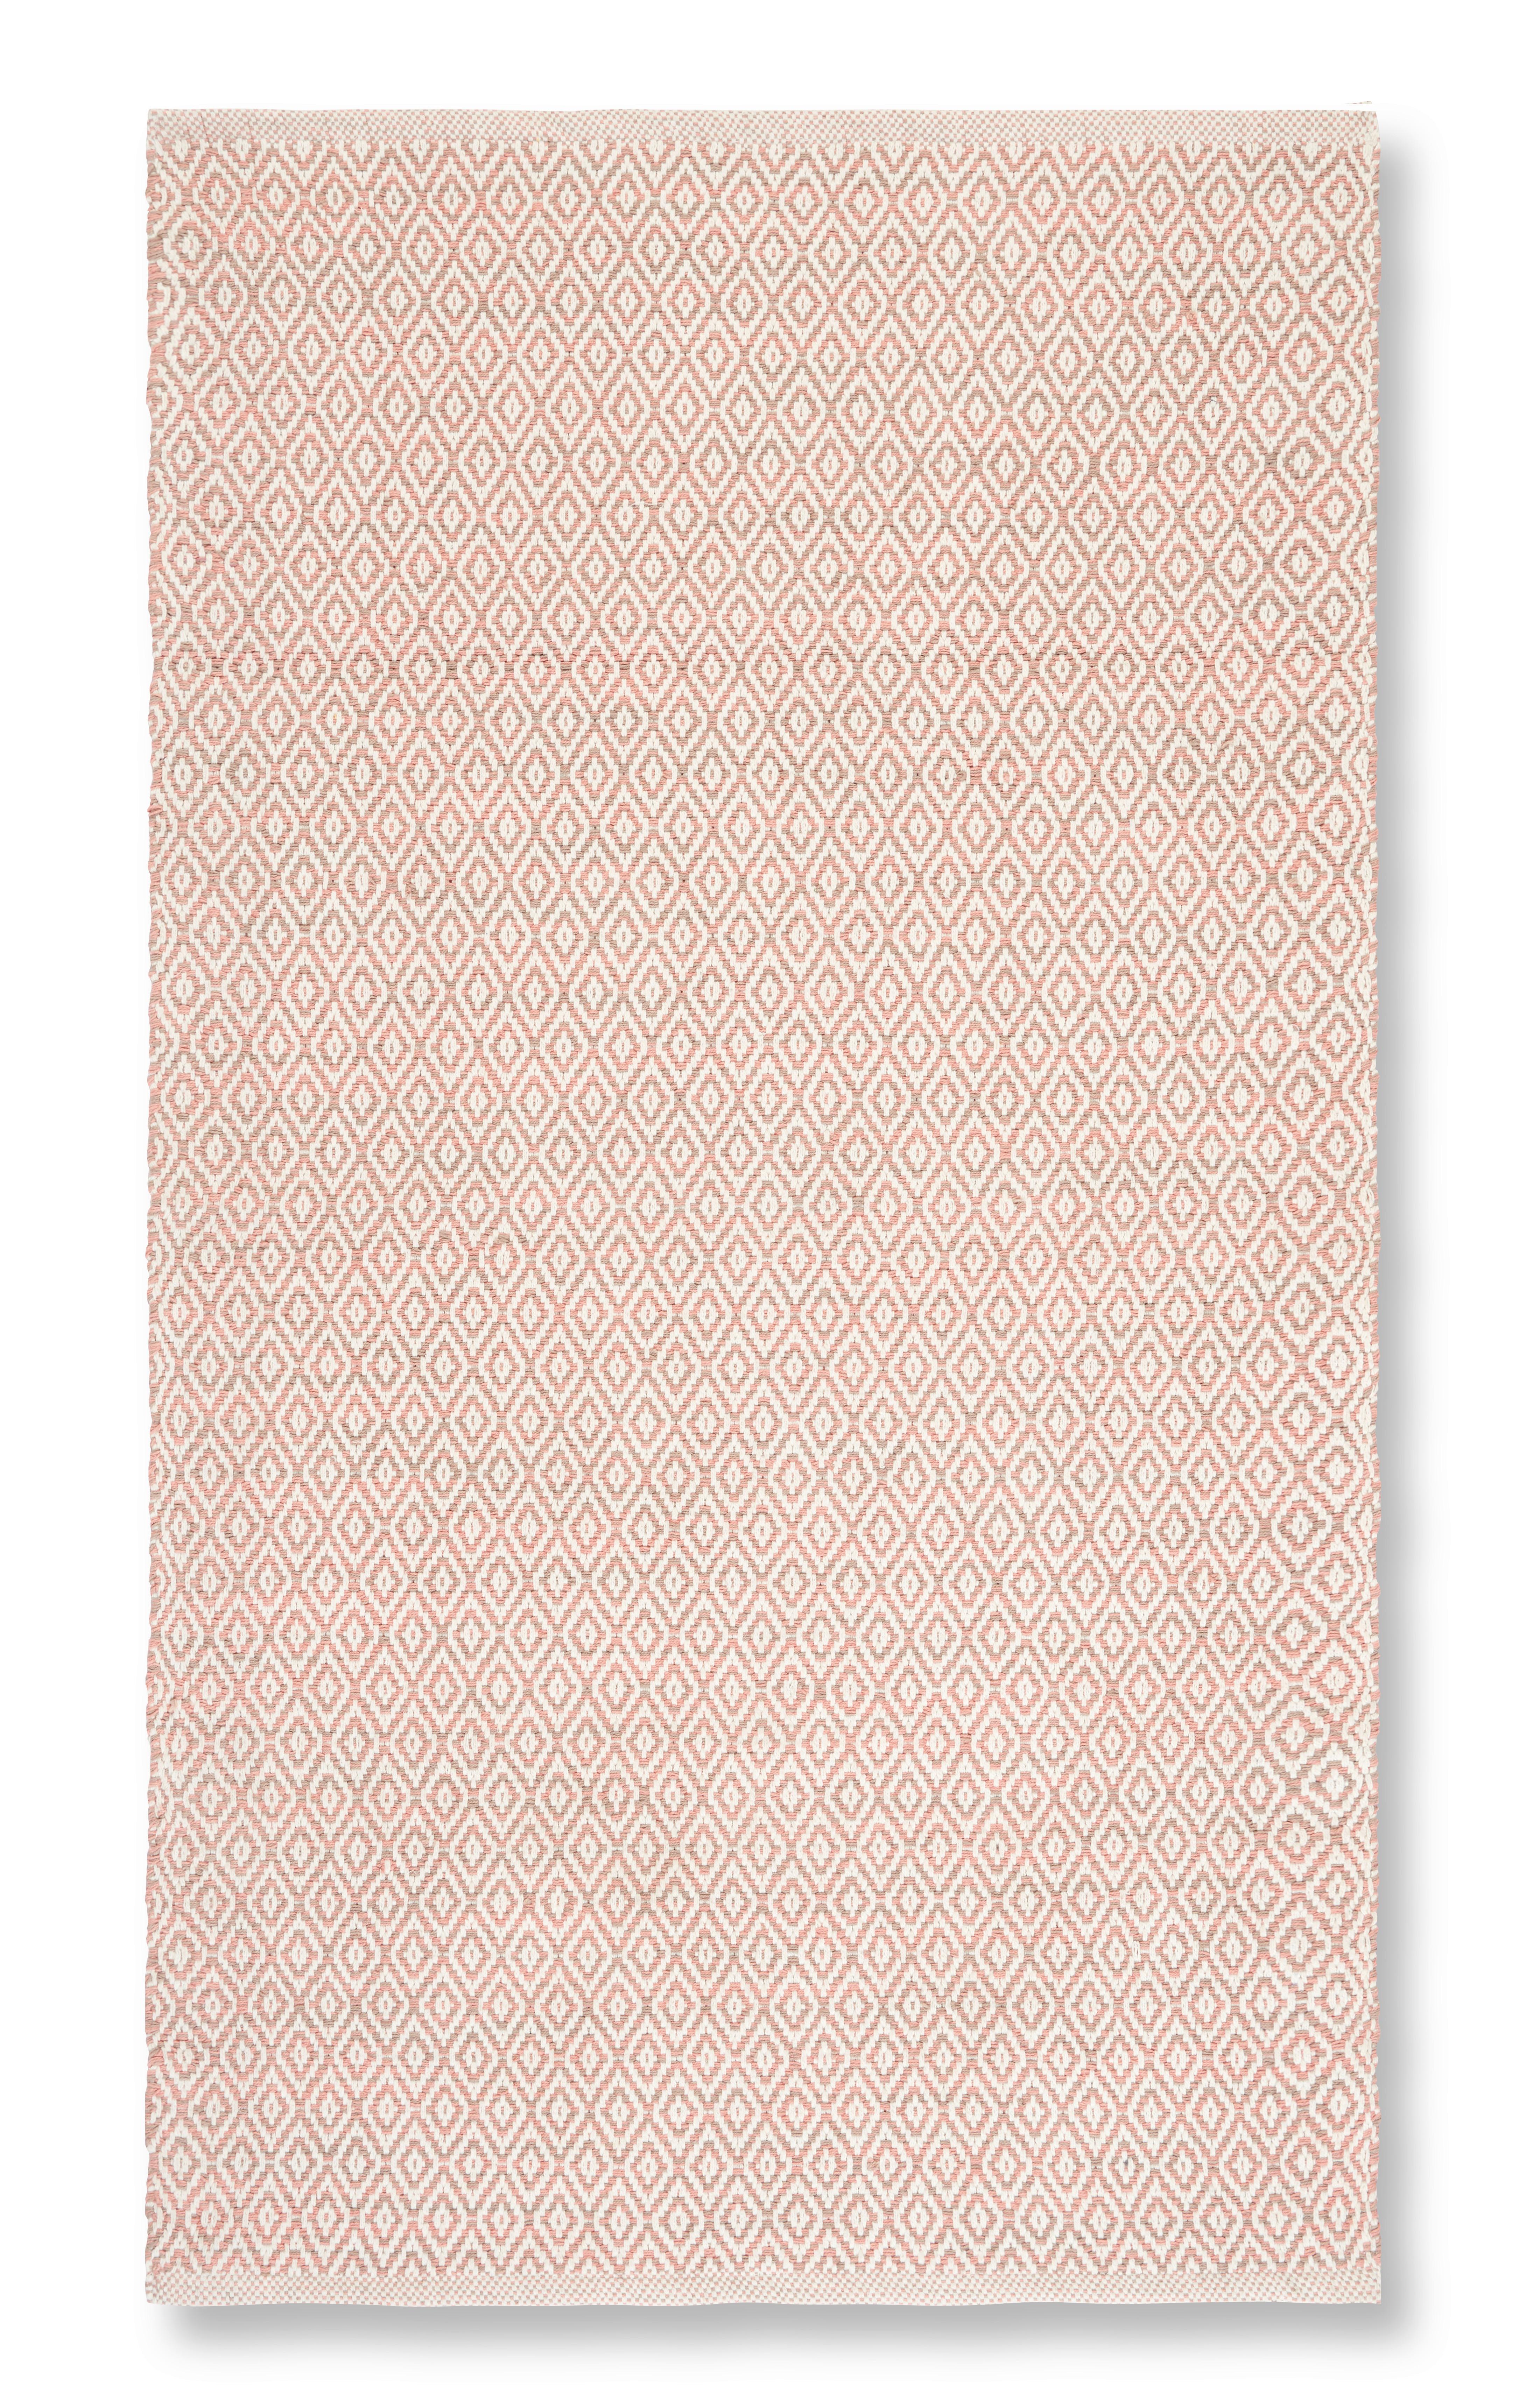 Ročno Tkana Preproga Carola 1 - roza, Basics, tekstil (60/120cm) - Modern Living